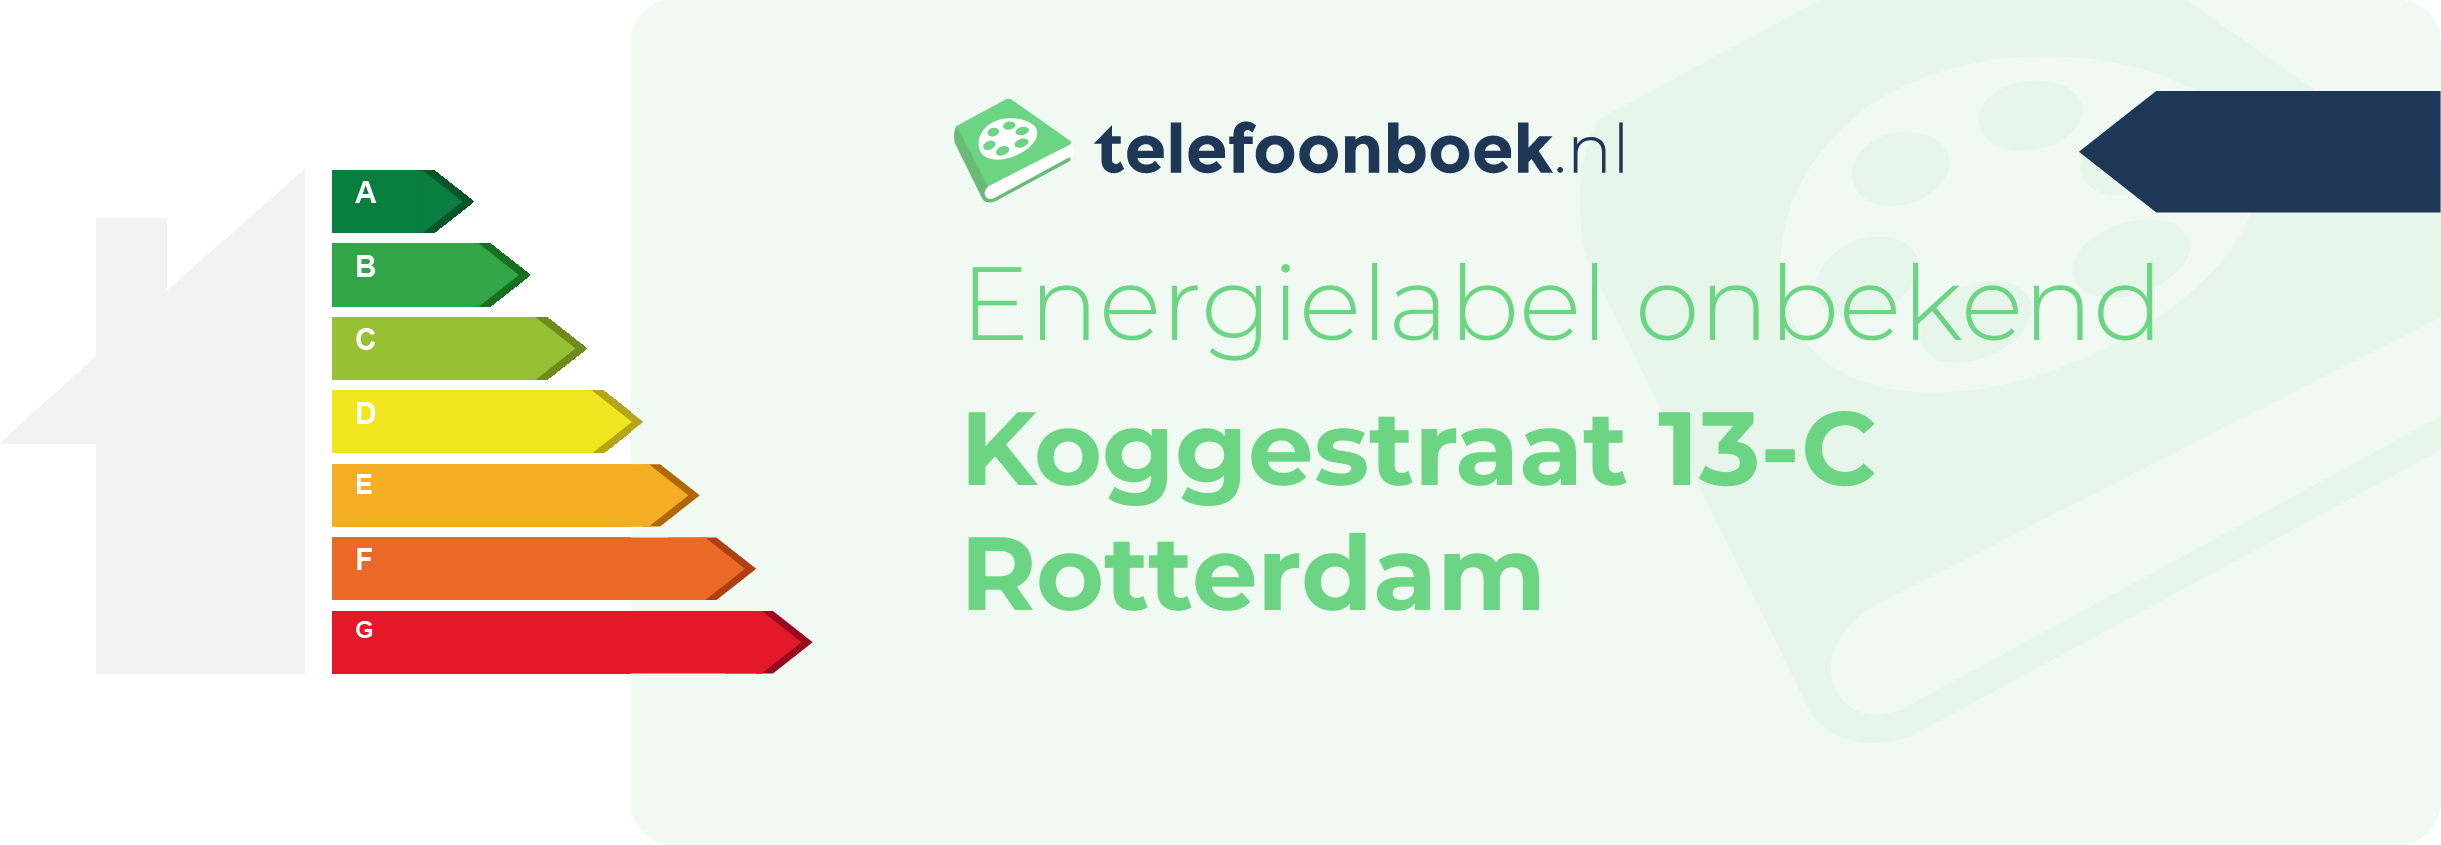 Energielabel Koggestraat 13-C Rotterdam